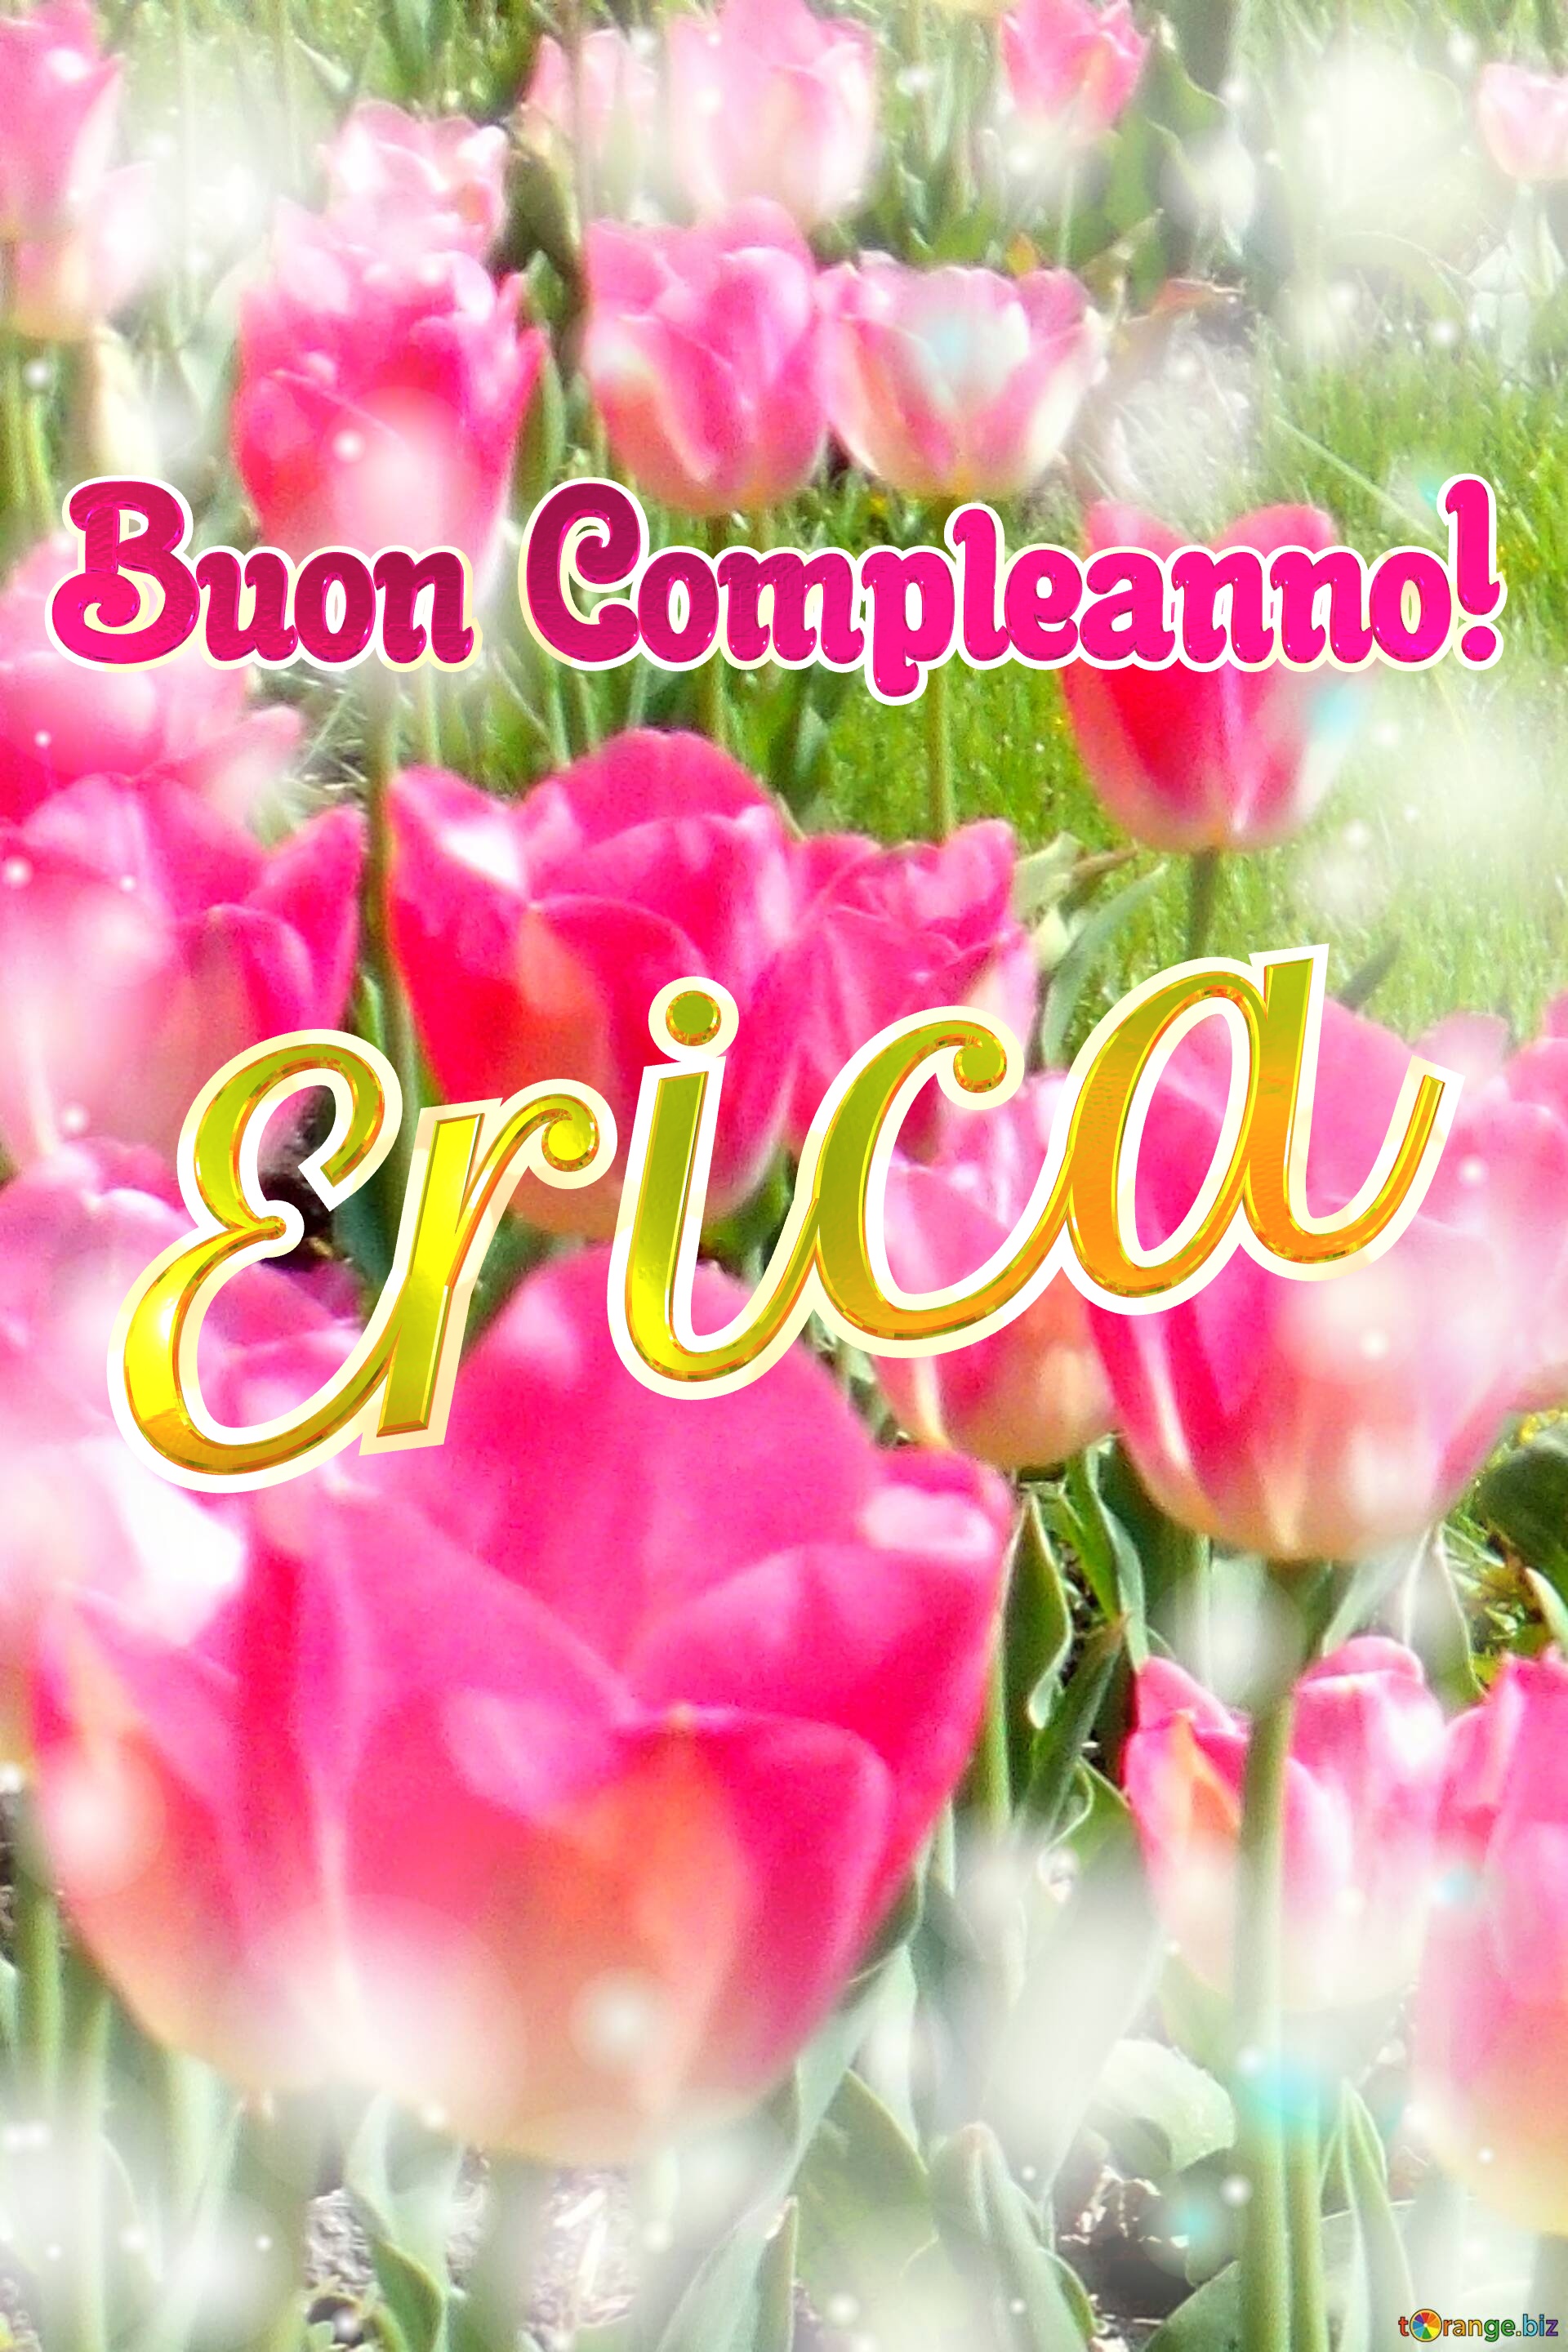 Buon Compleanno! Erica  La bellezza dei tulipani è un richiamo alla speranza, auguri per una vita piena di speranza. №0